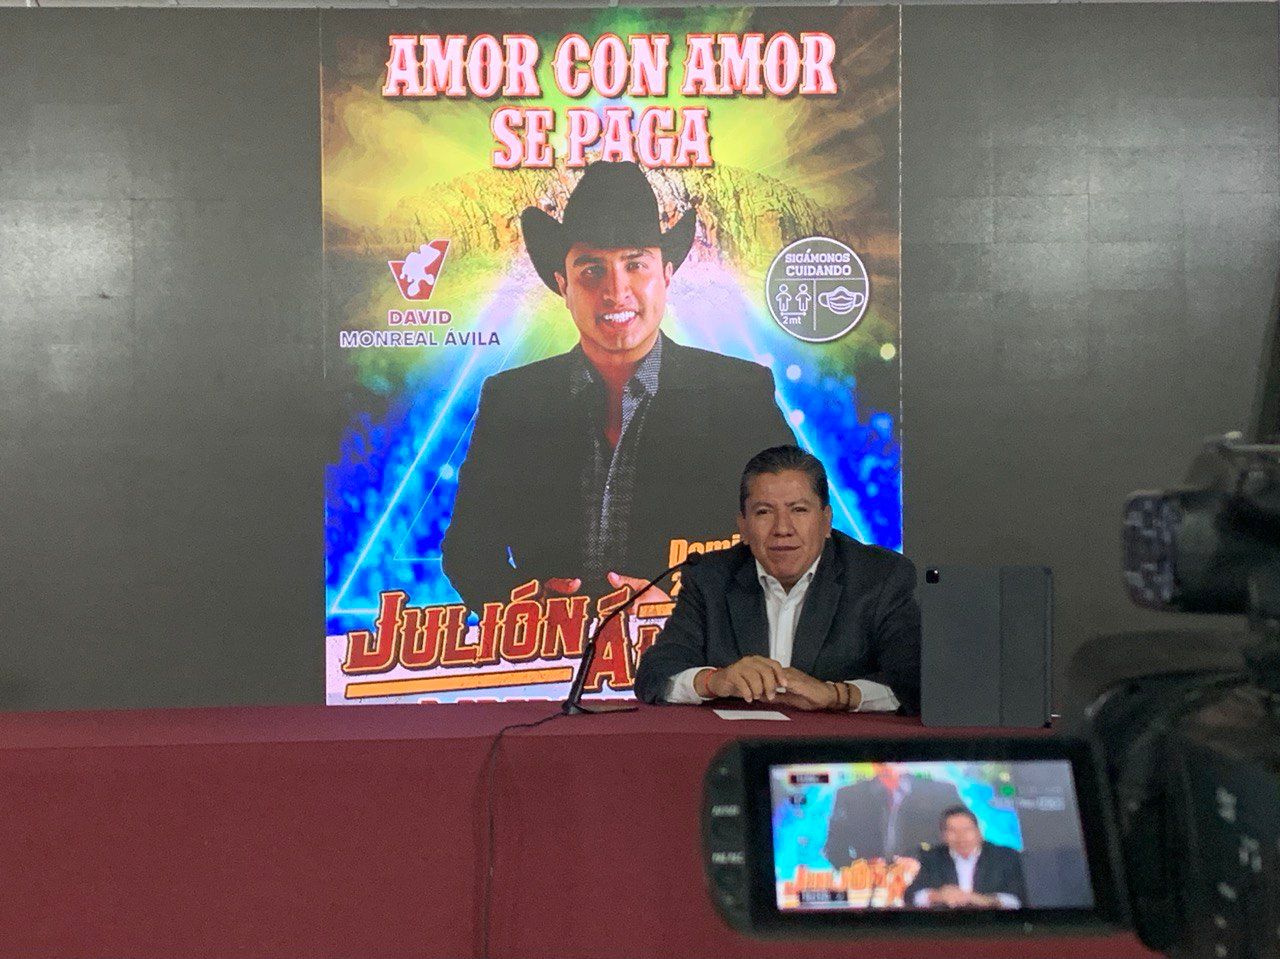 Para celebrar triunfo electoral David Monreal anuncia concierto con Julión Álvarez y Torneo Nacional Charro